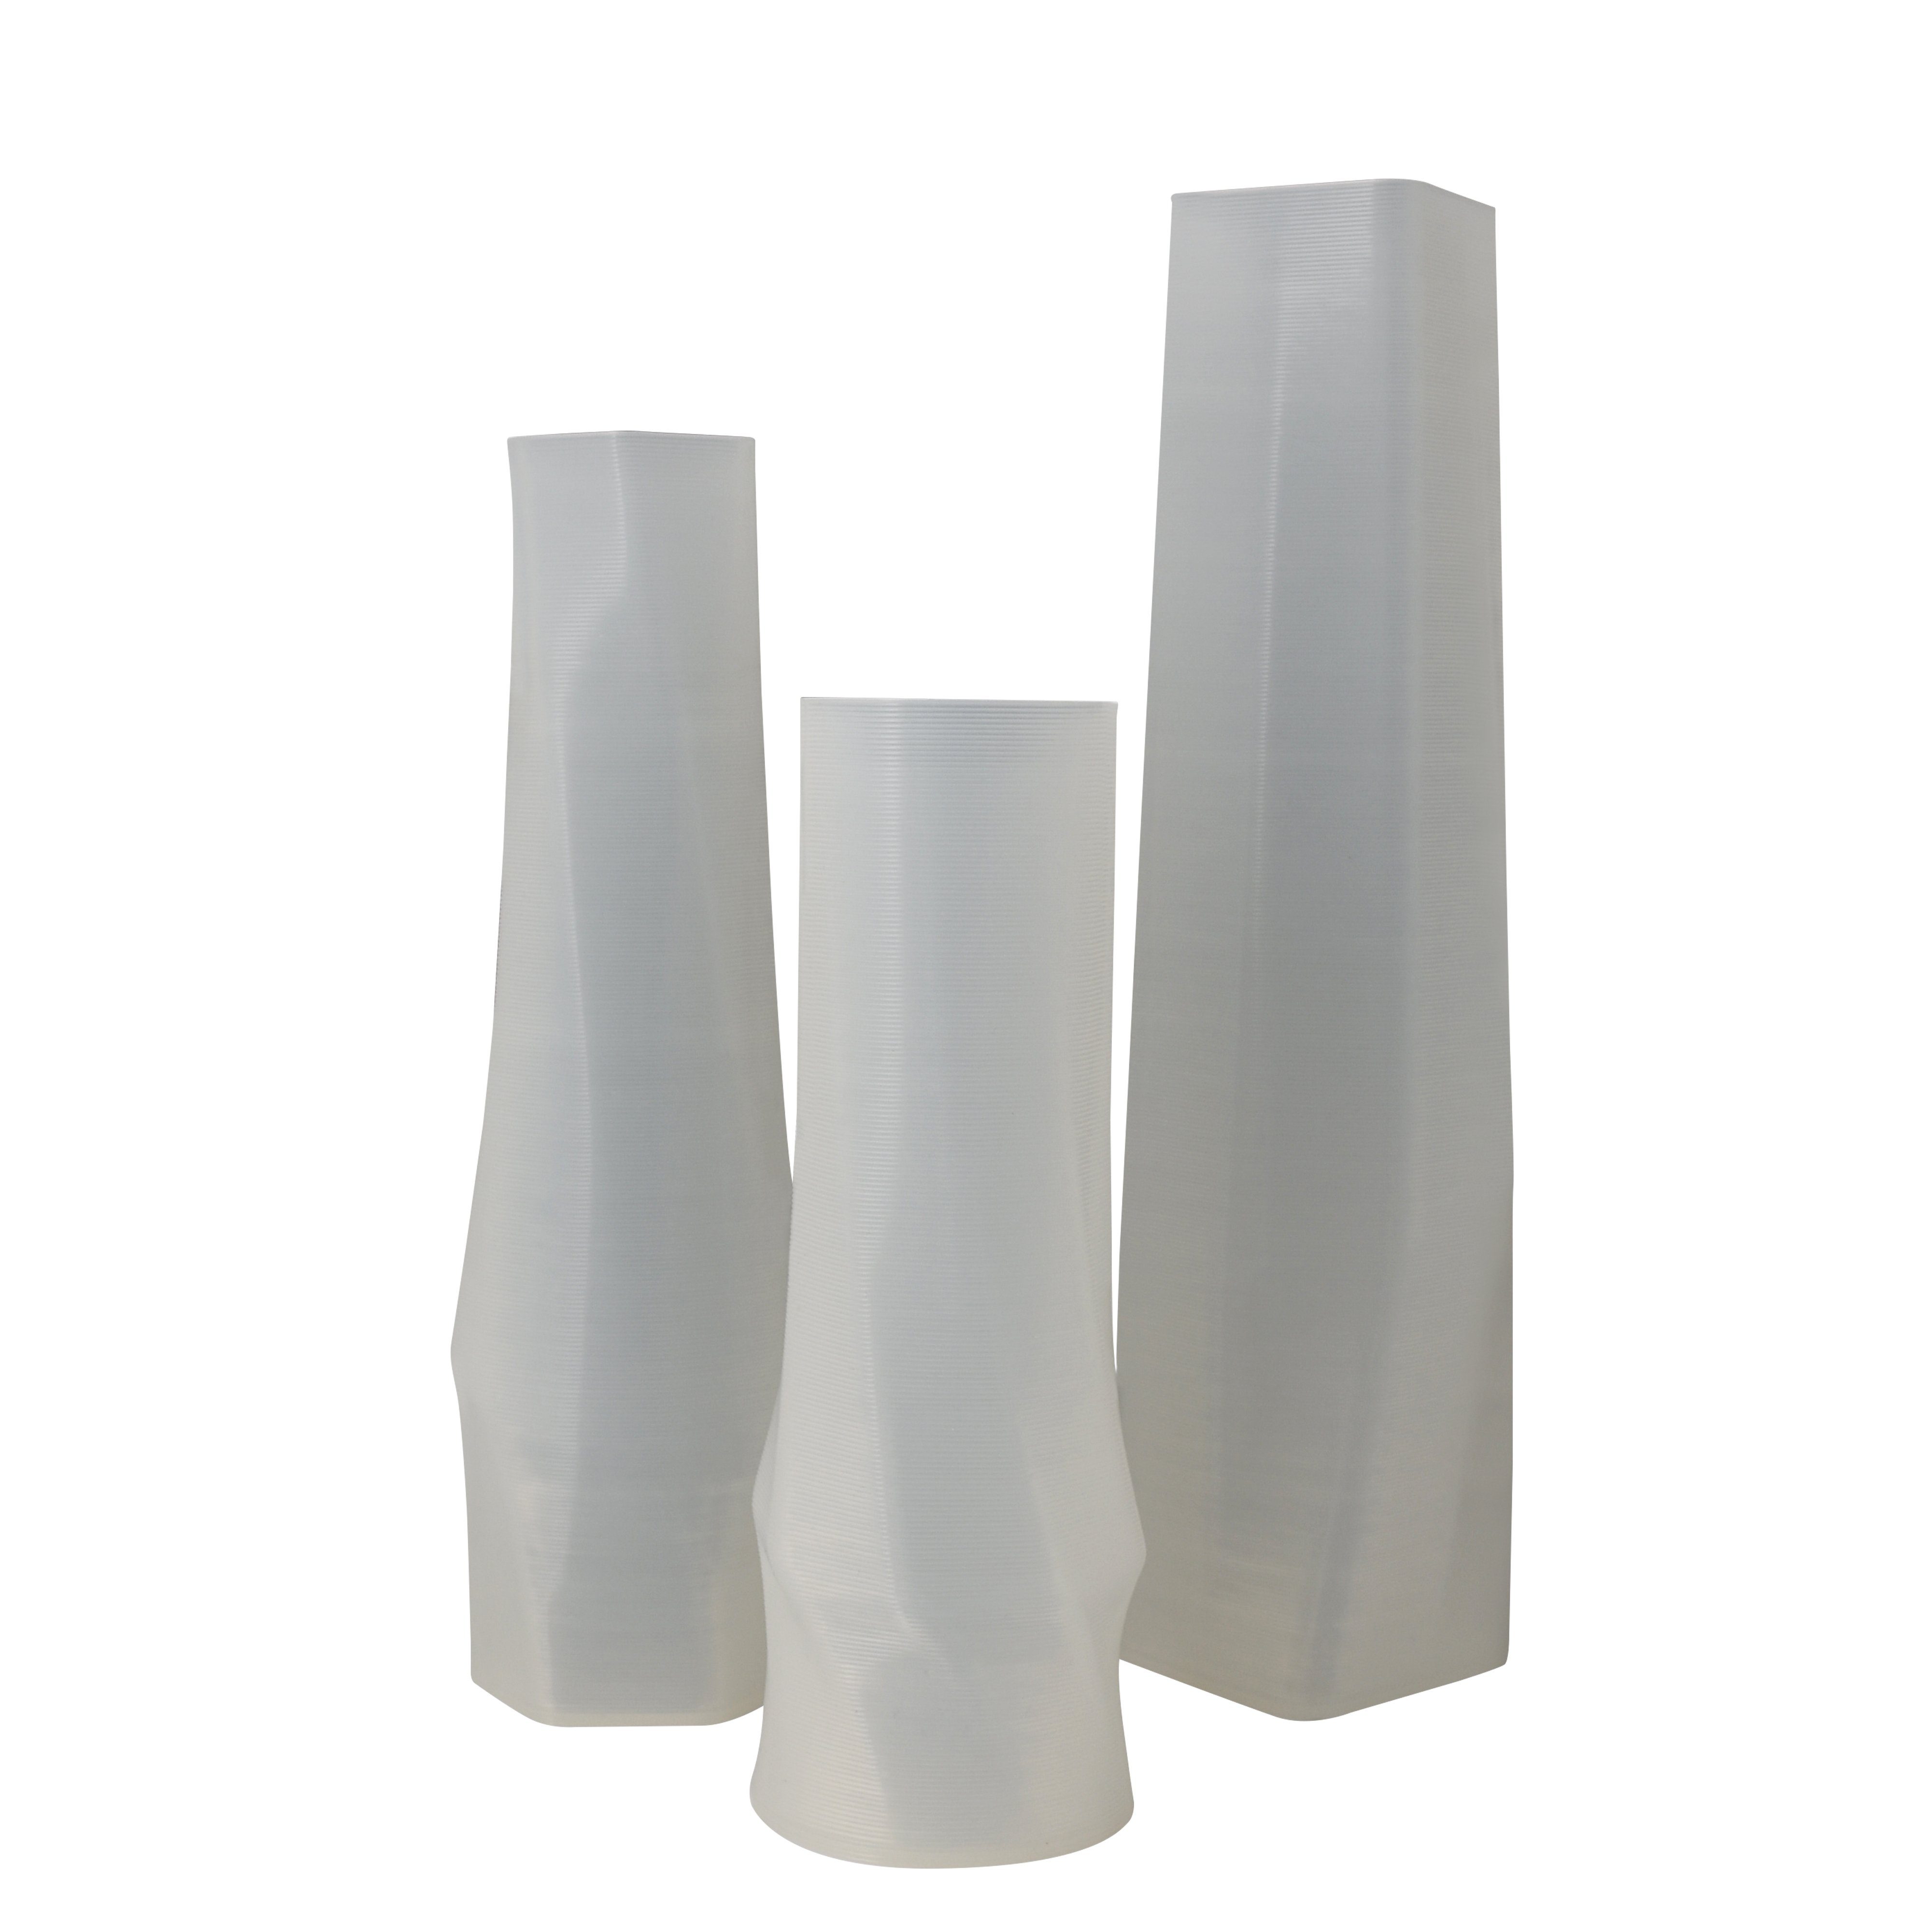 Shapes - Decorations Dekovase geometrio. (deco), 3D Vasen, 3er Set, 3D Dekovase, 100% 3D-Druck (3er Spar-Set, 3 Vasen in verschiedenen Größen), Durchsichtig; Leichte Struktur innerhalb des Materials (Rillung) Weiß